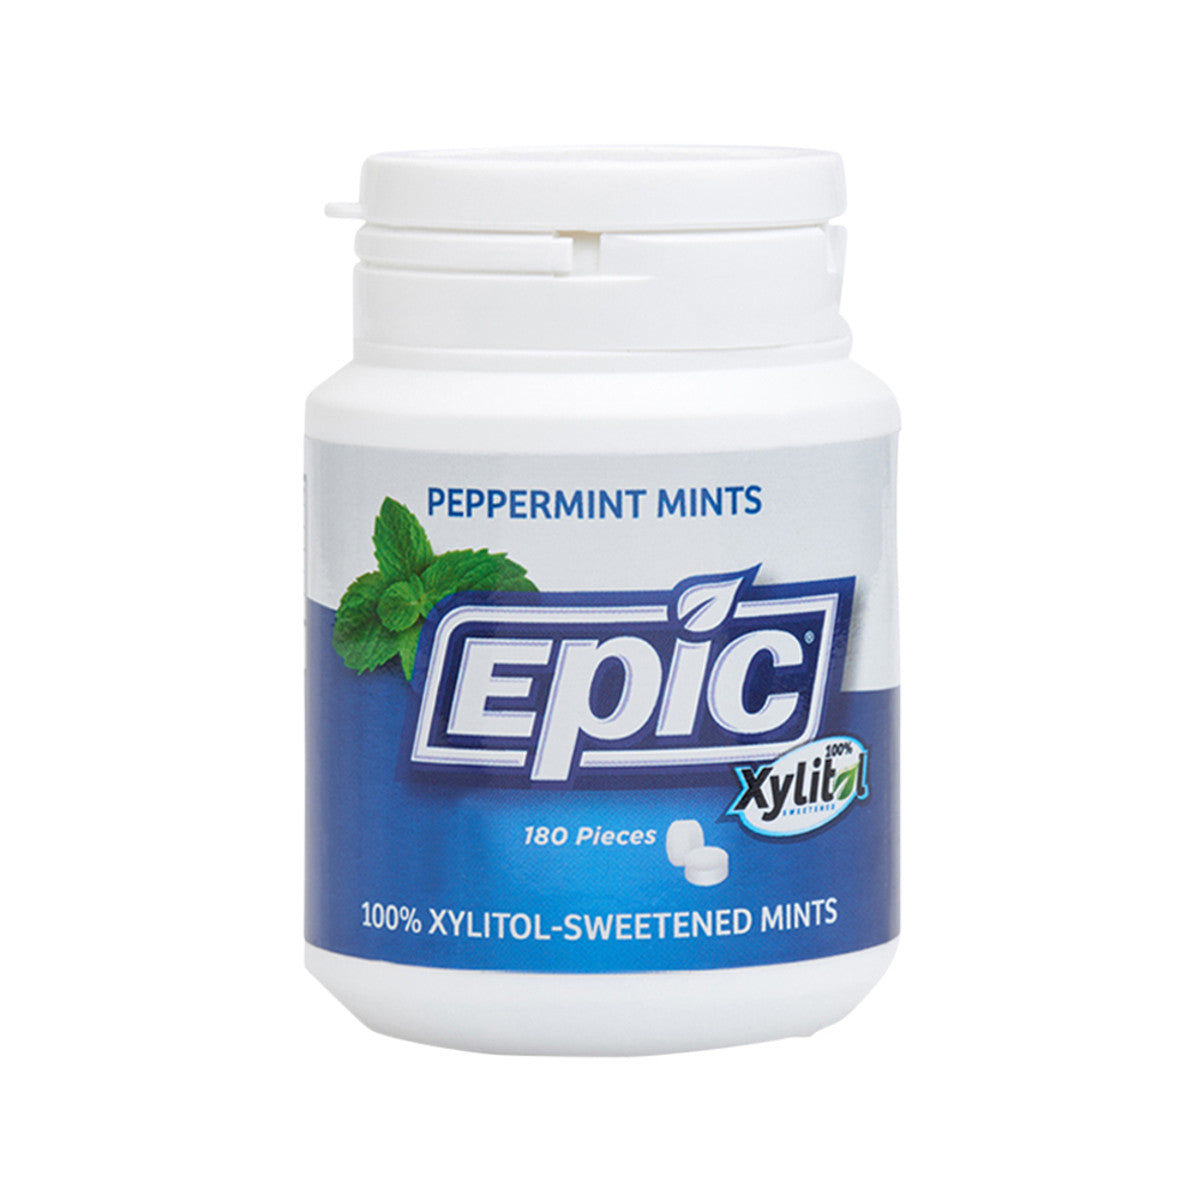 Epic Dental - Xylitol Dental Mints Peppermint 180pc Tub